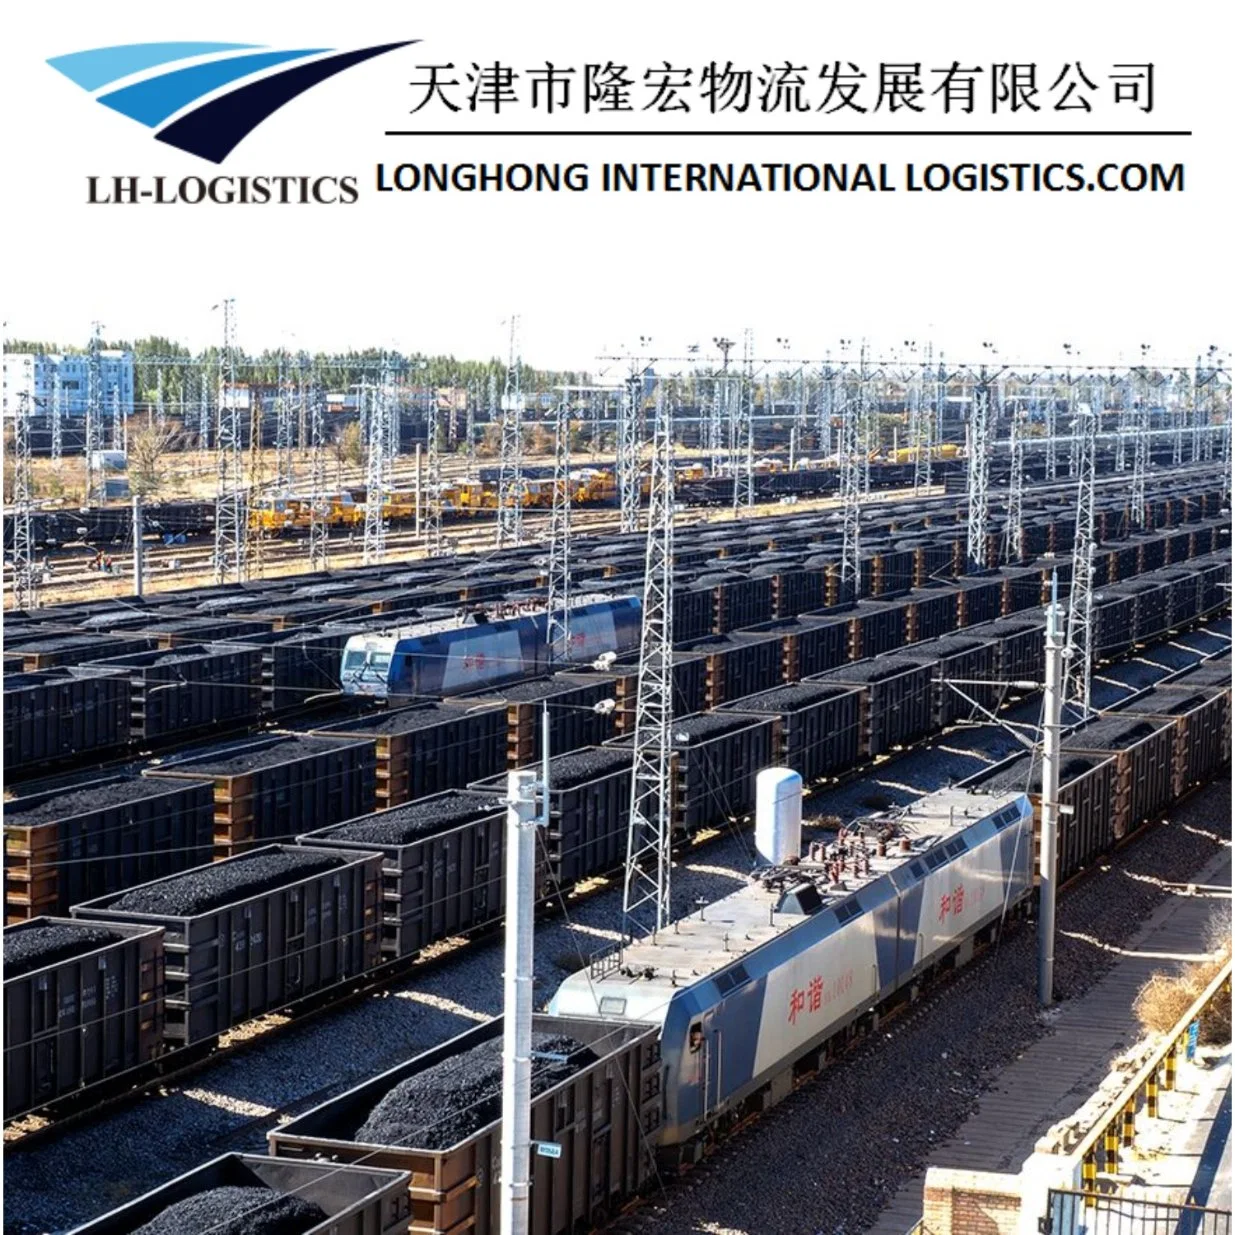 Professionelle Eisenbahn Transportation Agency Bereitstellung von Service Eisenbahn-Versand von China nach Europa, Russland, Kasachstan, Tadschikistan, Usbekistan